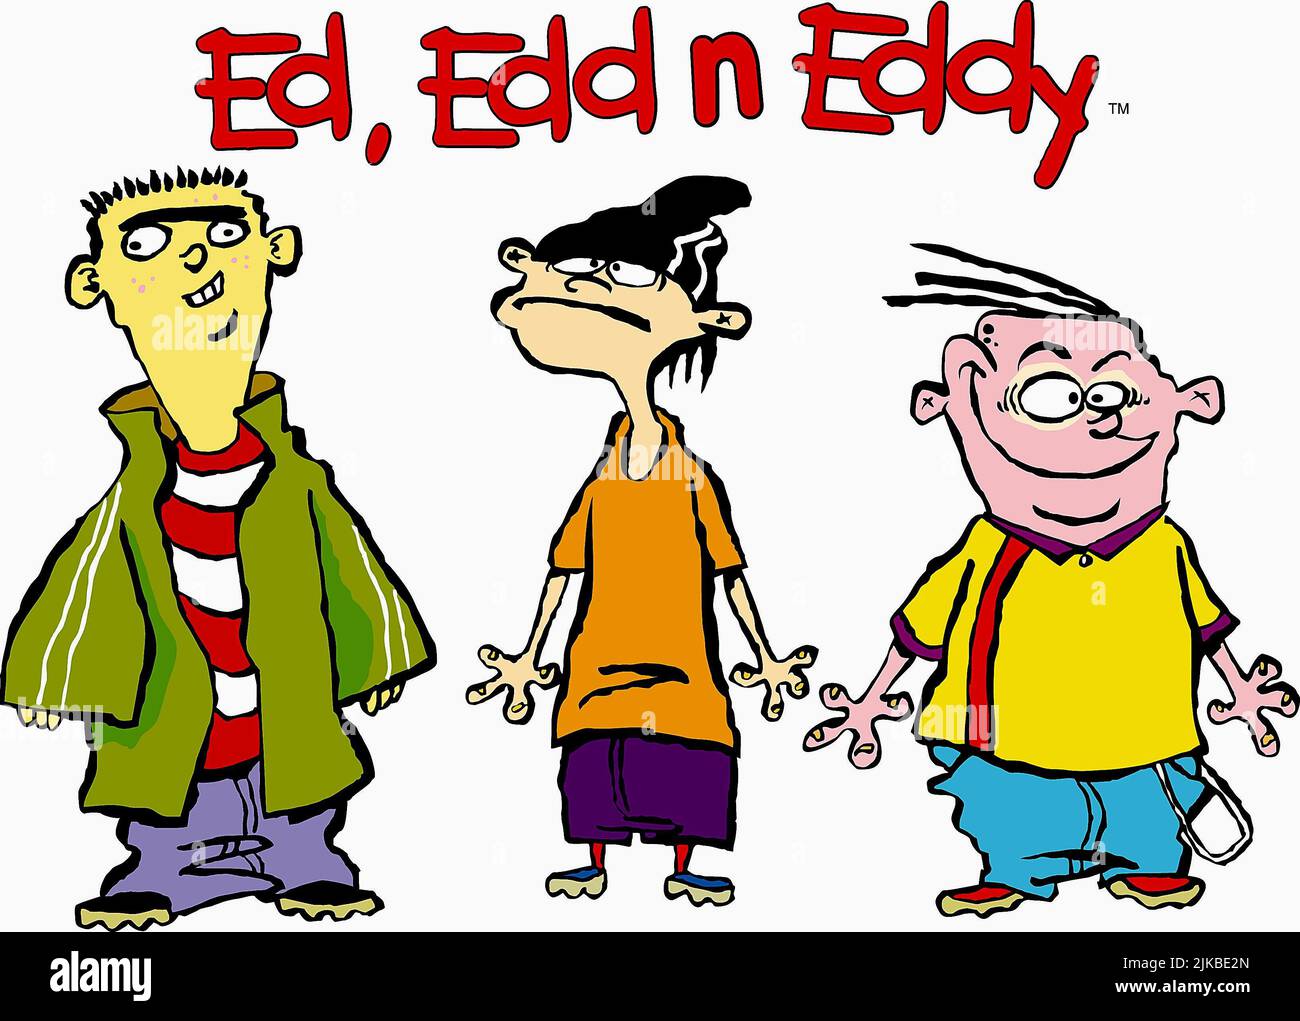 Ed, Edd n Eddy - Cartoon Network - wide 6